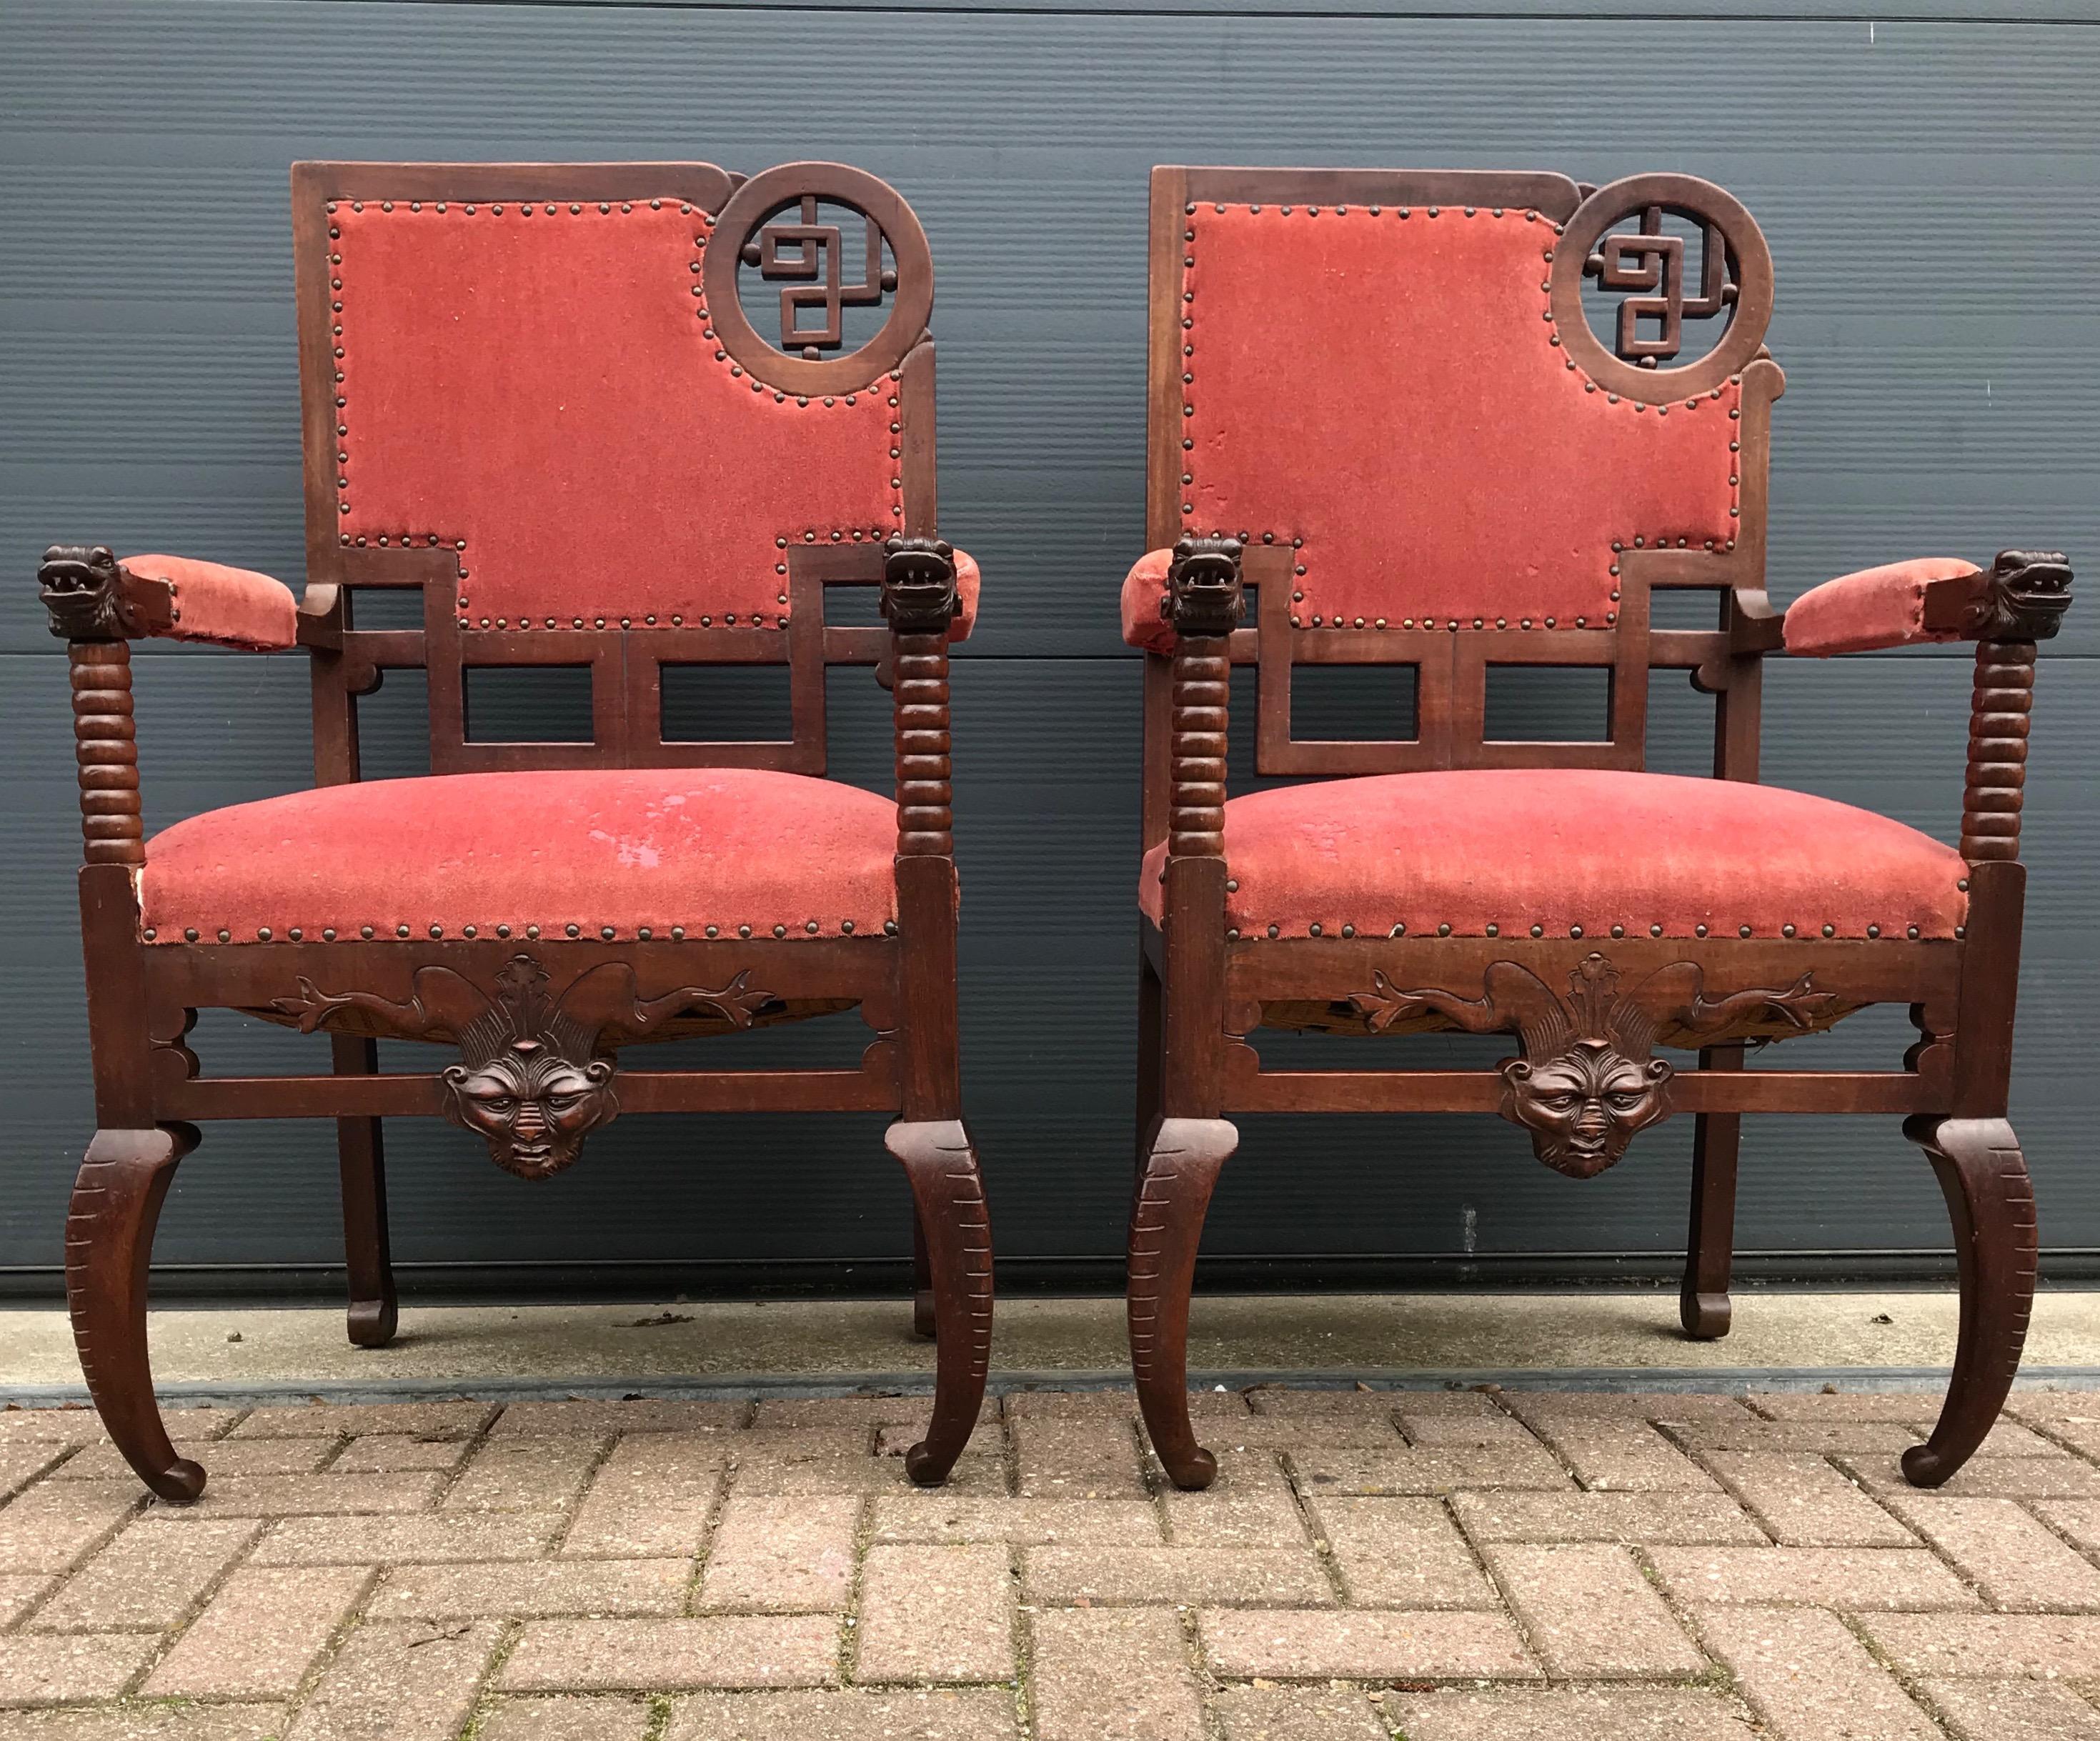 Beeindruckendes und sehr stilvolles Set handgefertigter Stühle aus den späten 1800er Jahren. 

Dieses seltene Stuhlpaar ist so stabil wie am ersten Tag und auch das markante Holz ist in gutem Zustand. Die massiven Hartholzrahmen dieser einzigartigen